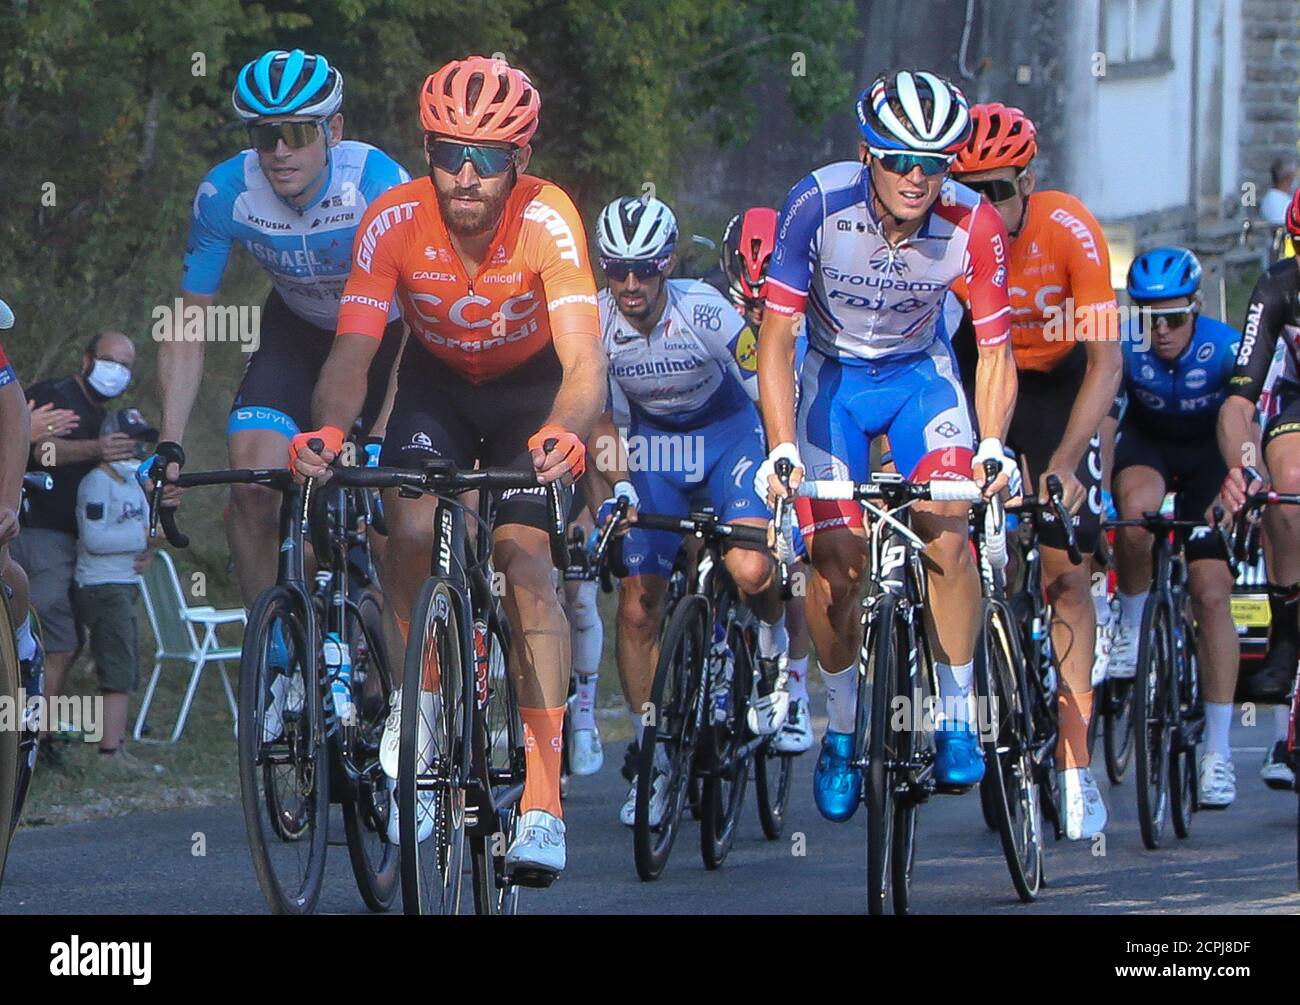 Simon Geschke del CCC Team e Valentin Madouas di Groupama - FDJ durante il Tour de France 2020, gara ciclistica tappa 19, Bourg en Bresse - Champagnole Foto Stock